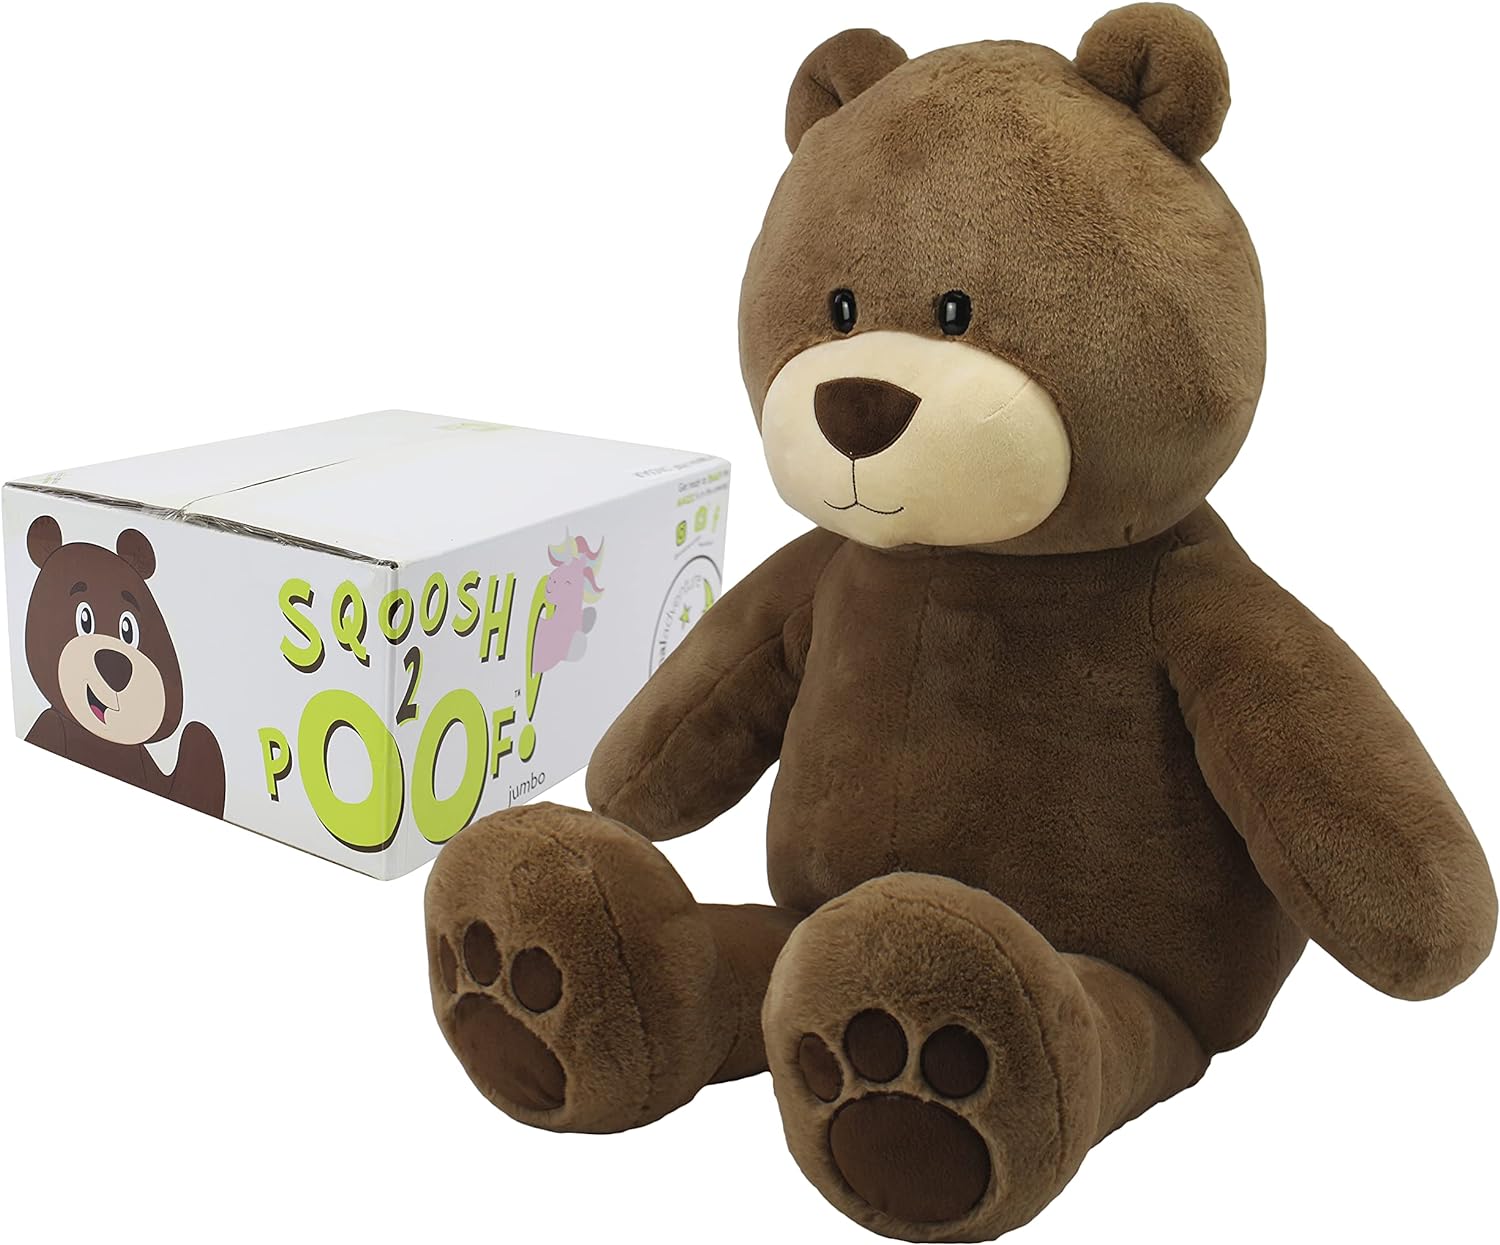 【史。低大熊熊🐻】Animal Adventure 54 英吋大熊熊 $19.12